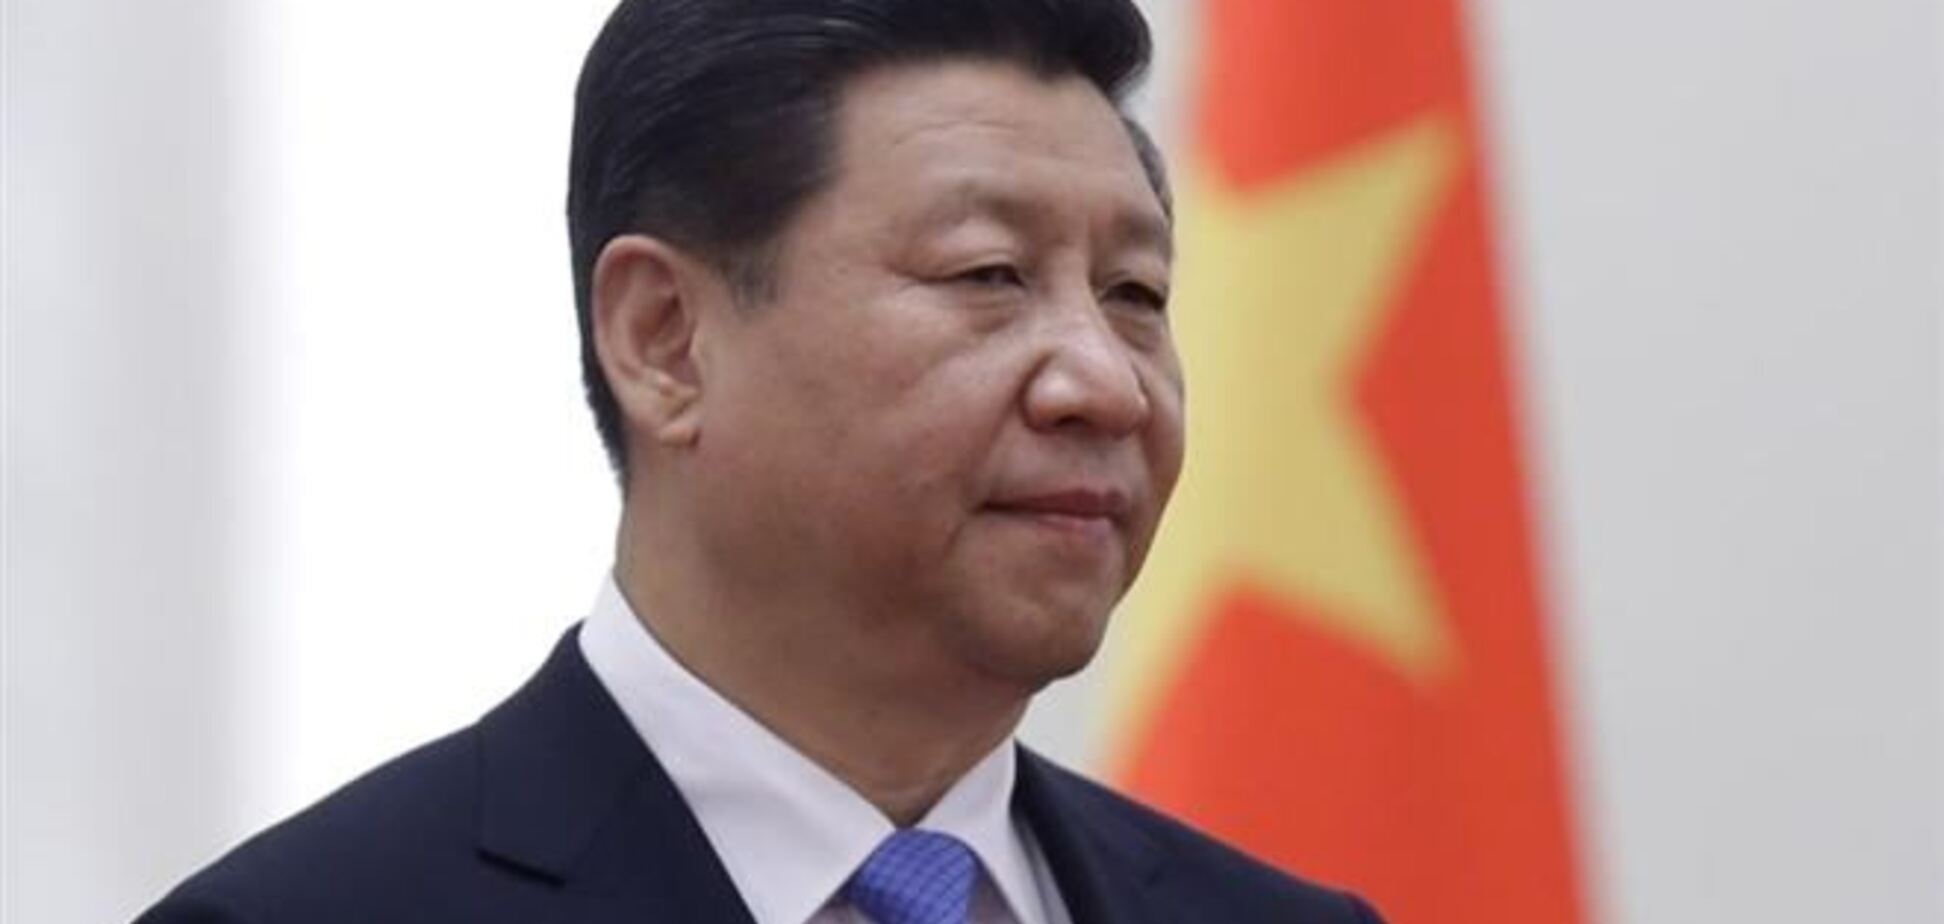 Лідер Китаю про ситуацію в Україні: всі сторони повинні проявляти холоднокровність і стриманість